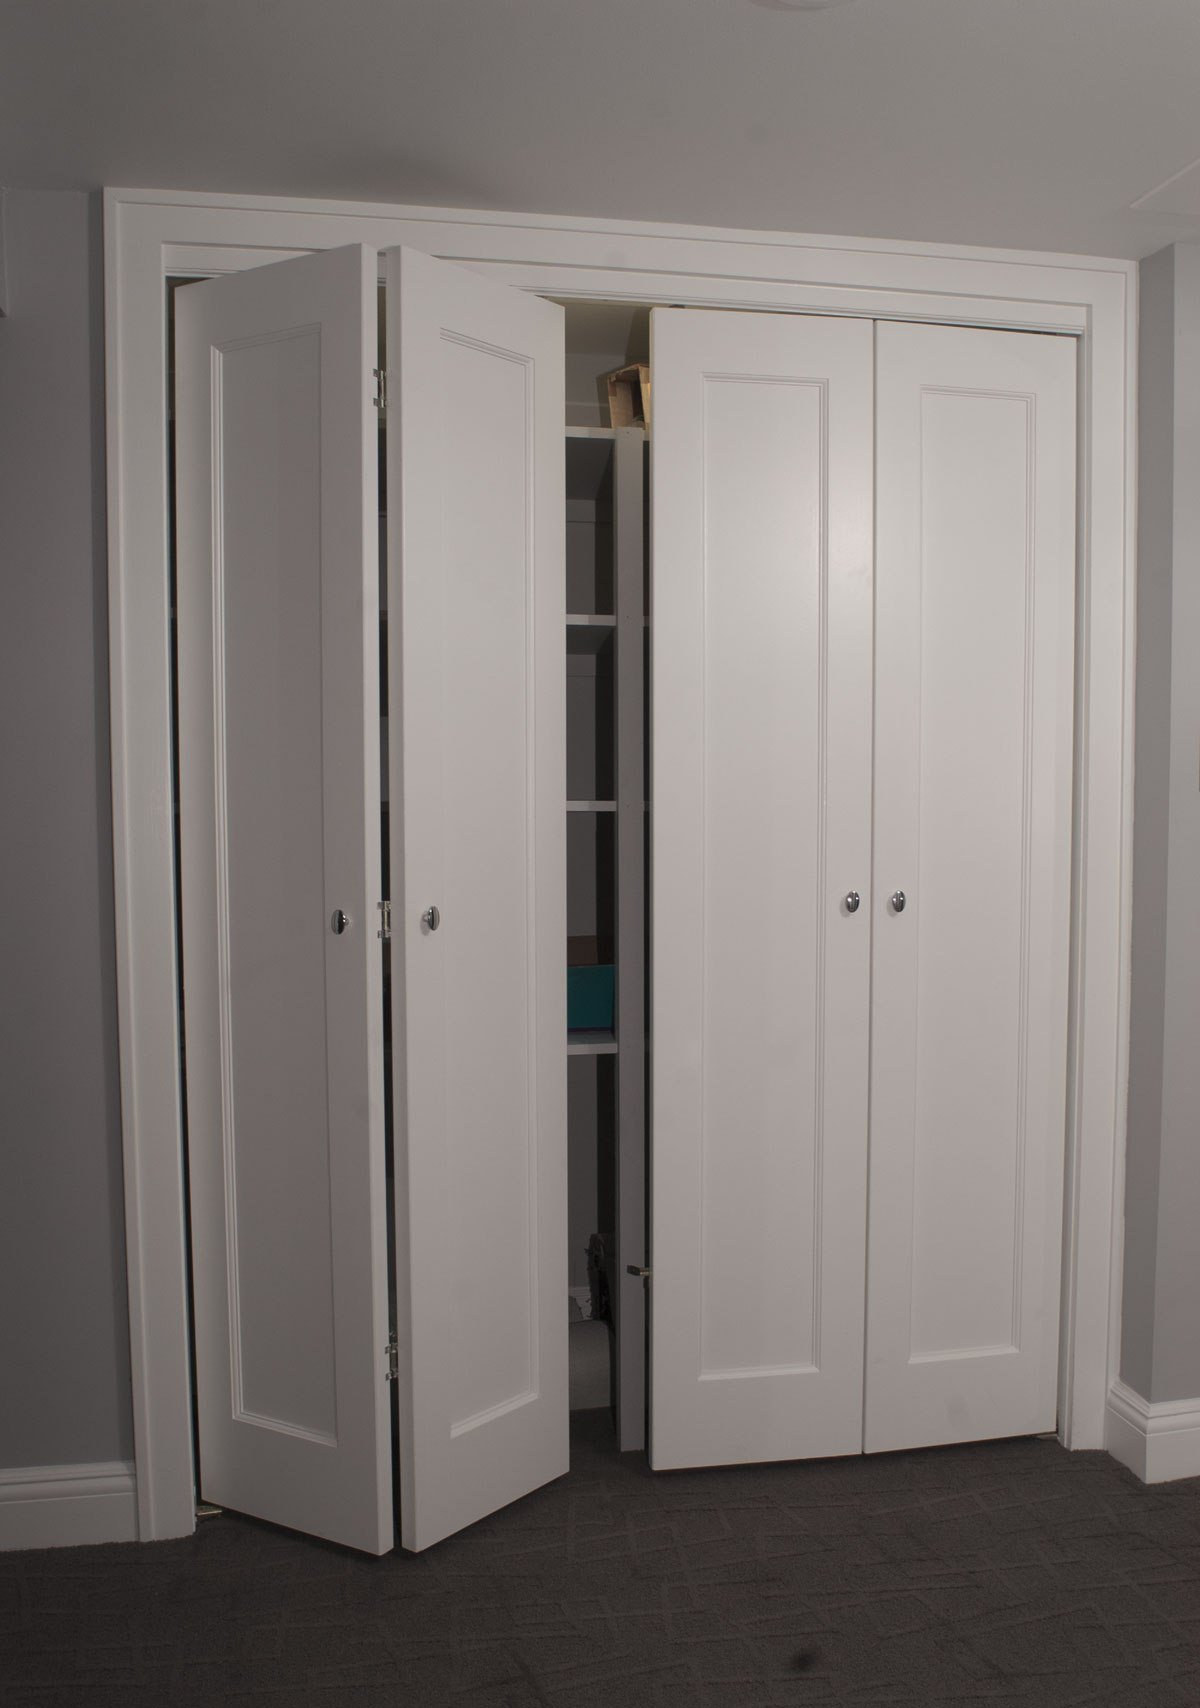 Двухстворчатая дверь шкафа. Складные двери в гардеробную. Двери гармошкой для гардеробной. Складная дверь для гардеробной. Складная дверь для шкафа.